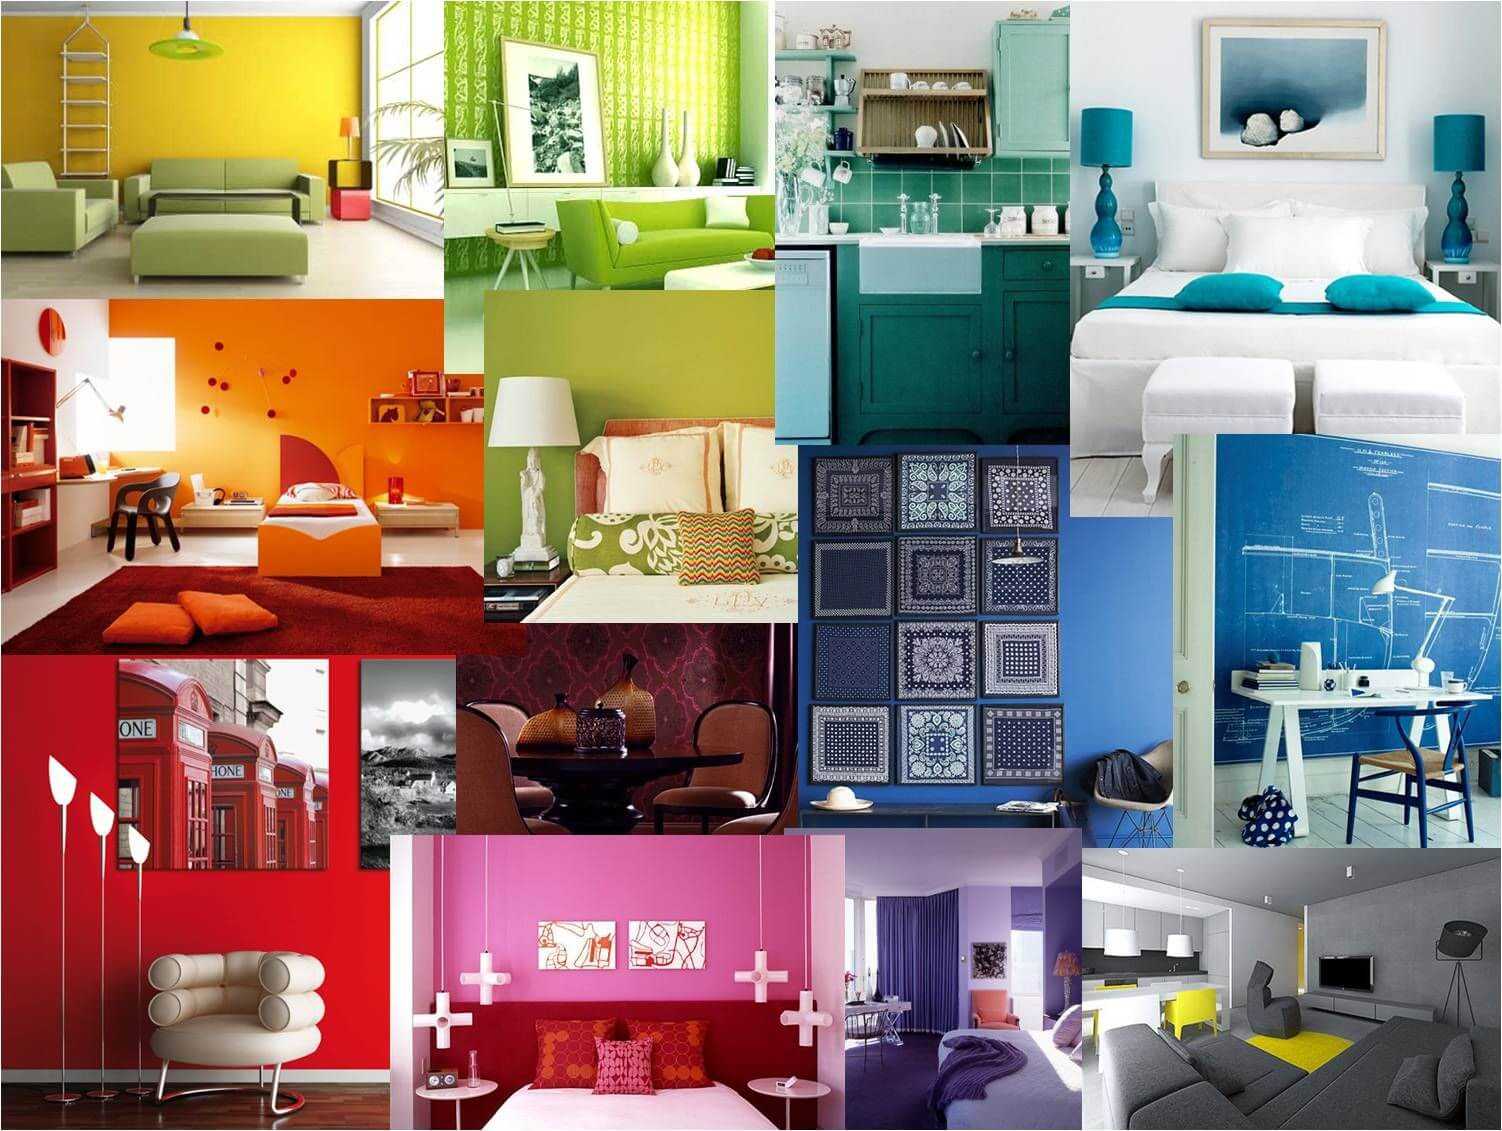 Как выбрать цвет обоев правильно: общие рекомендации и нюансы для различных комнат в квартире – кухни, гостиной, спальни, зала